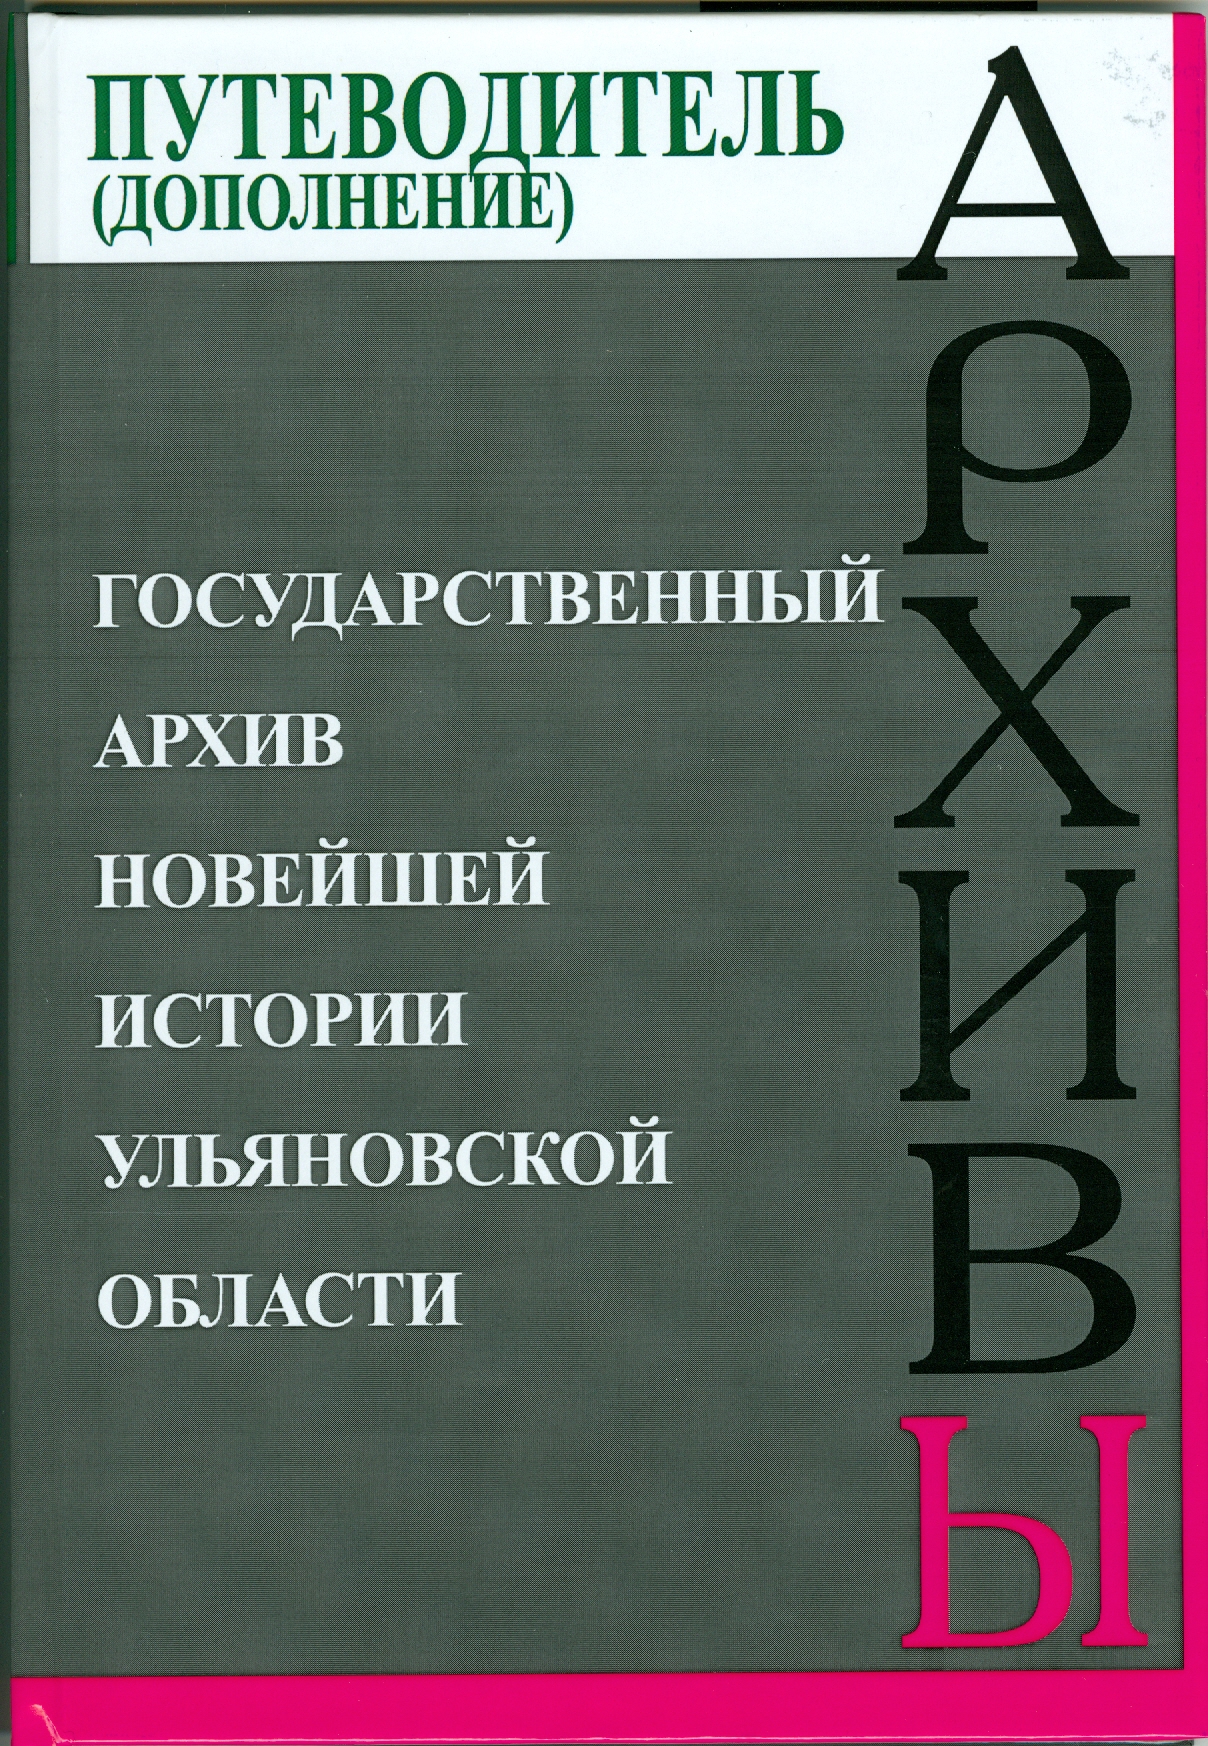 Дополнение к путеводителю –  2012 г.